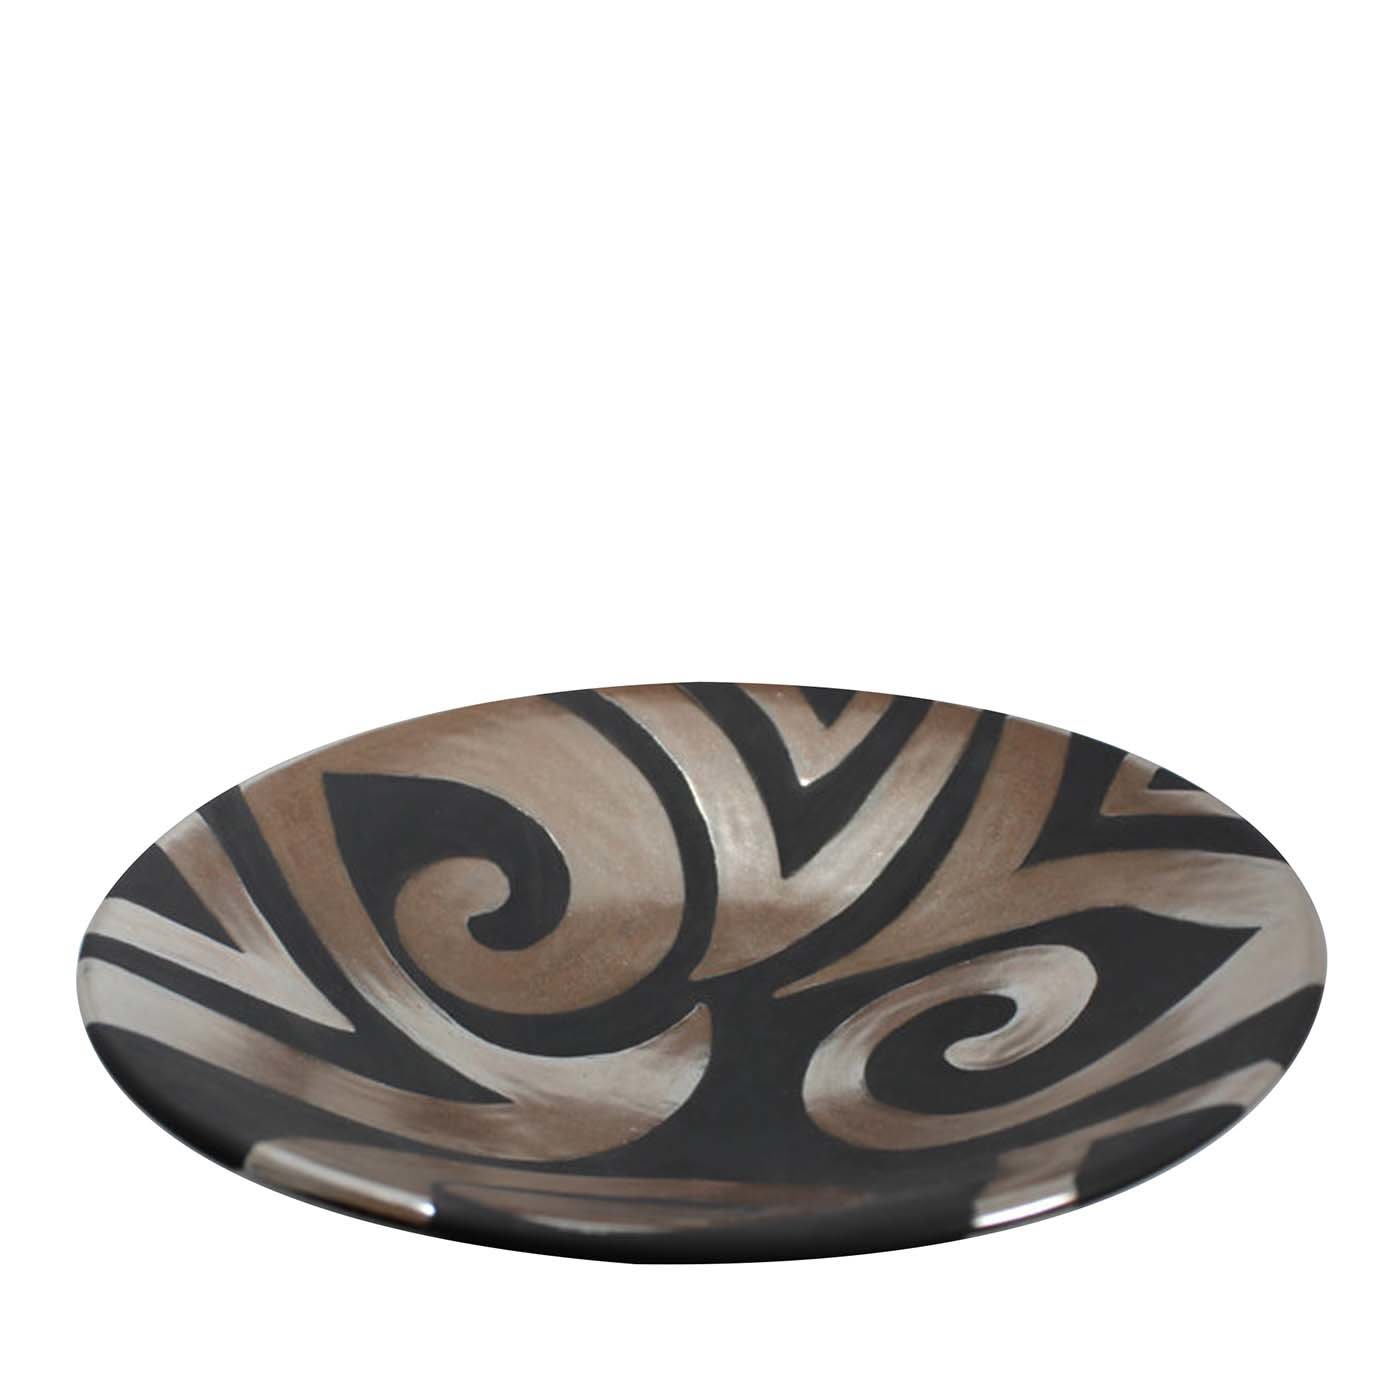 Tribal1 ceramic bowl - Ceramiche Artistiche Giannini